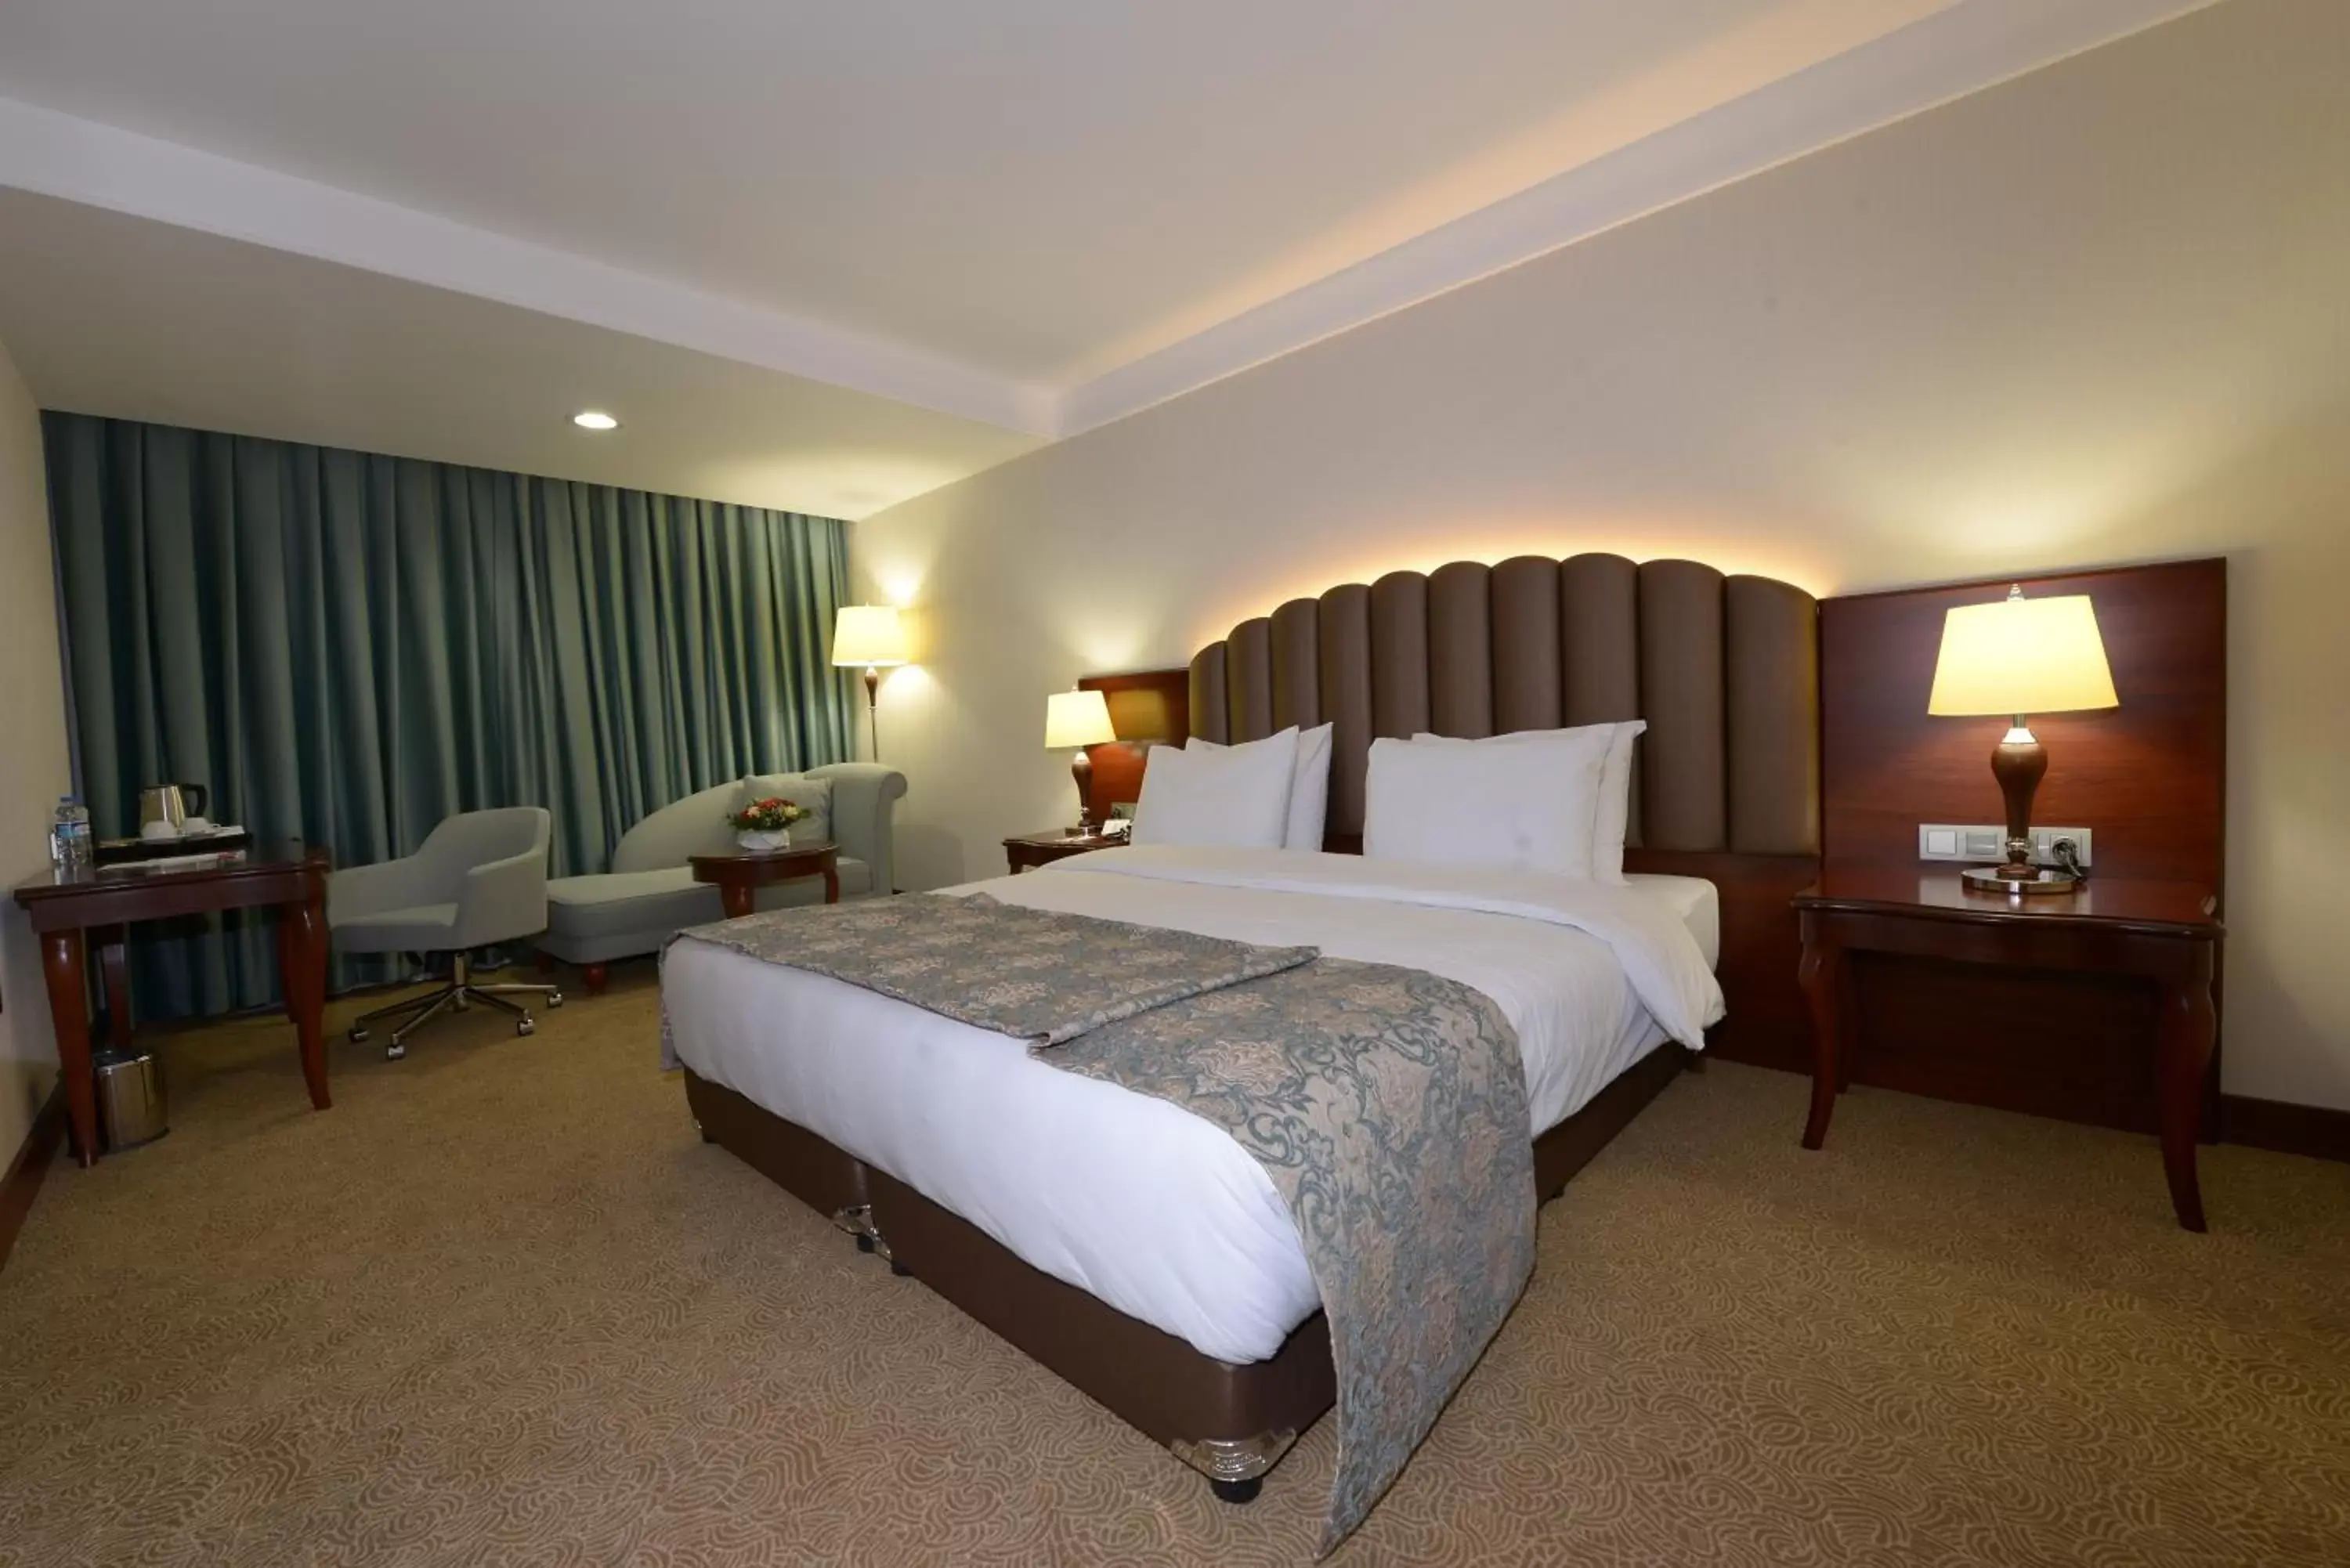 Bedroom, Bed in Ramada Plaza Altin Kayisi Hotel